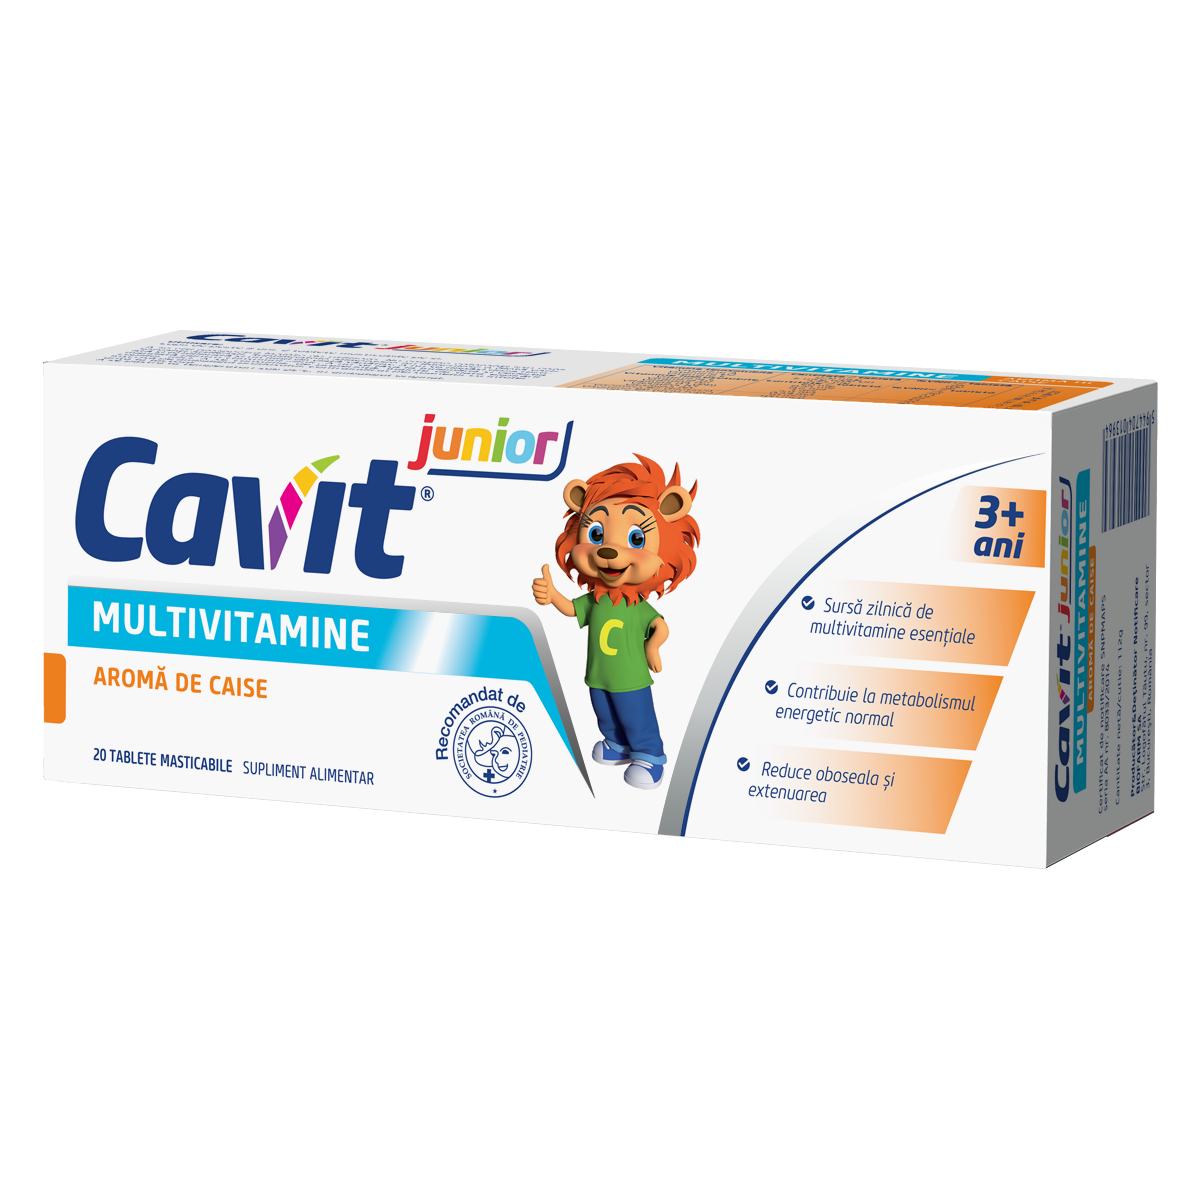 Copii - Cavit junior multivitamine cu aroma de caise, 20 tablete, Biofarm, sinapis.ro